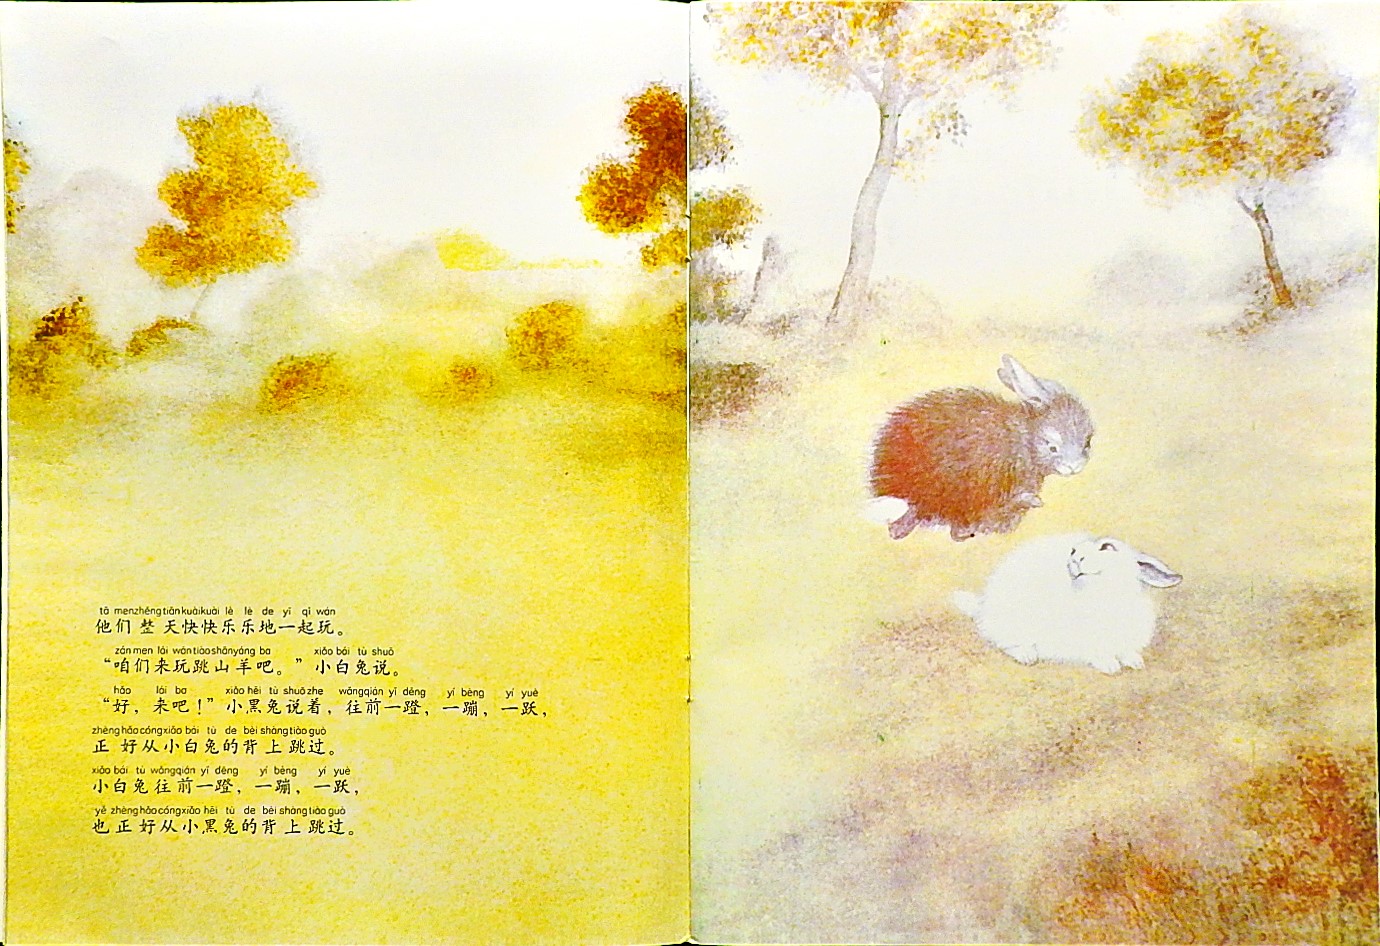 黑兔和白兔 (05),绘本,绘本故事,绘本阅读,故事书,童书,图画书,课外阅读